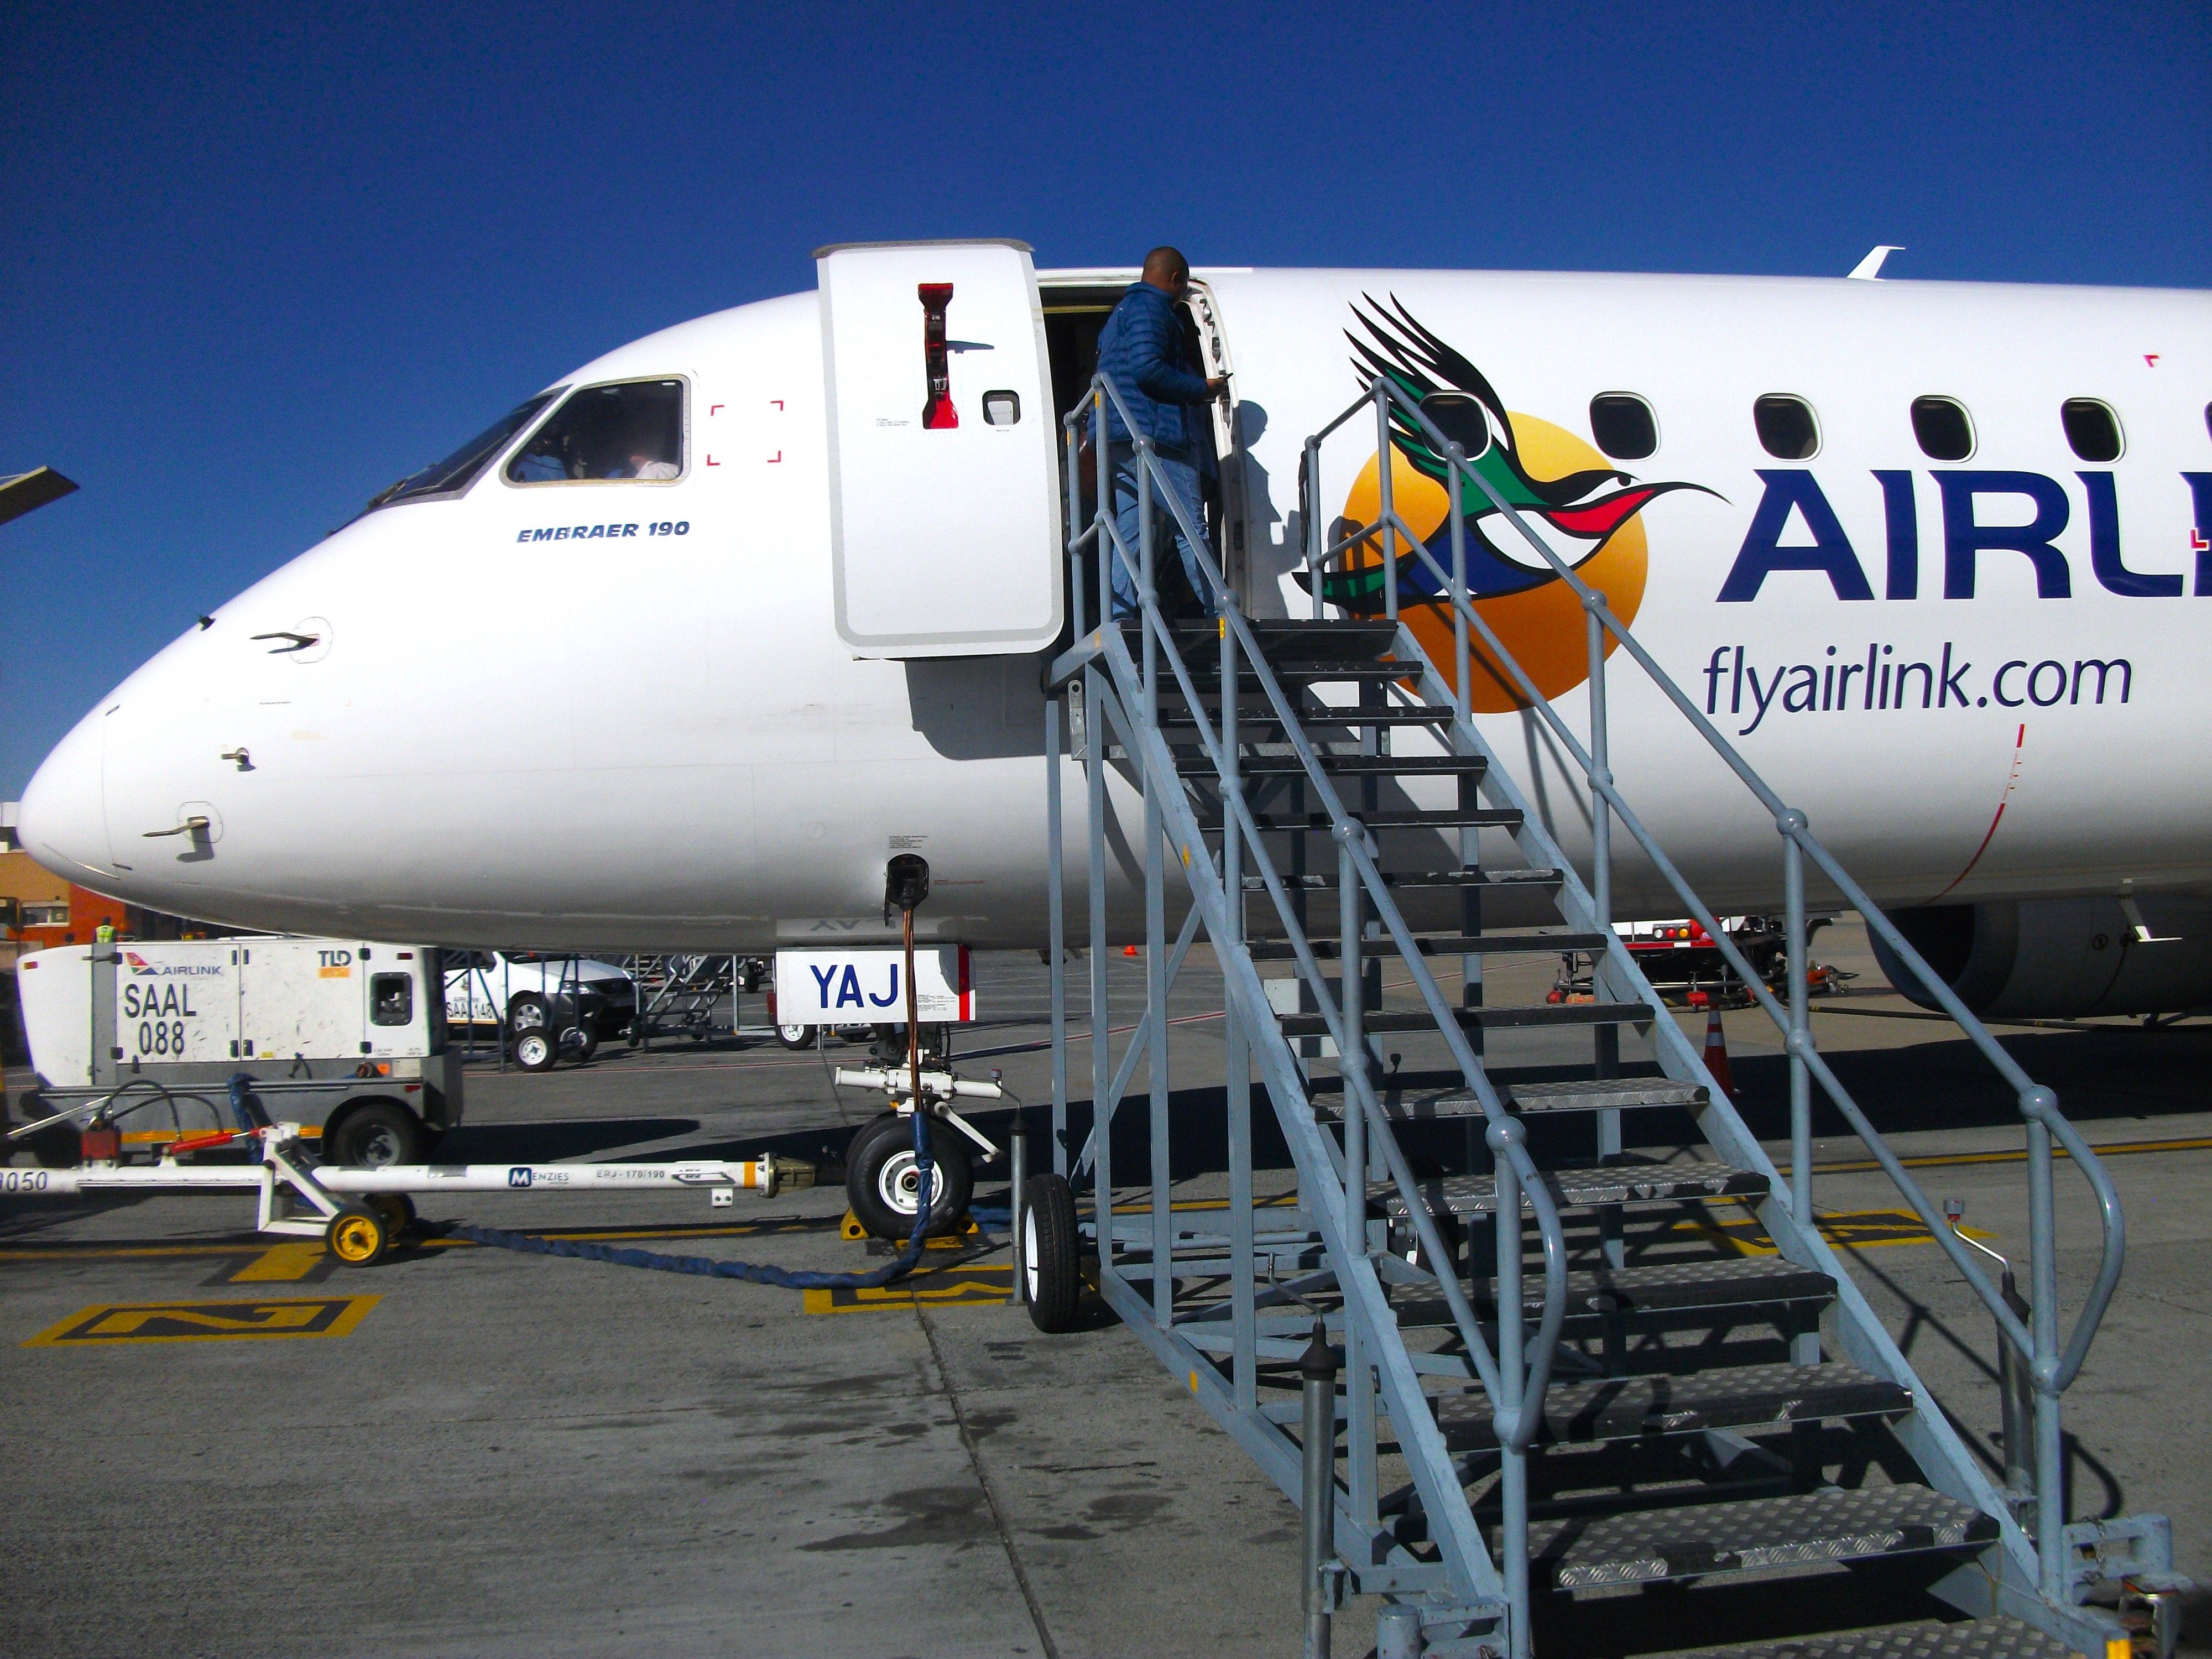 Airlink Embraer 190